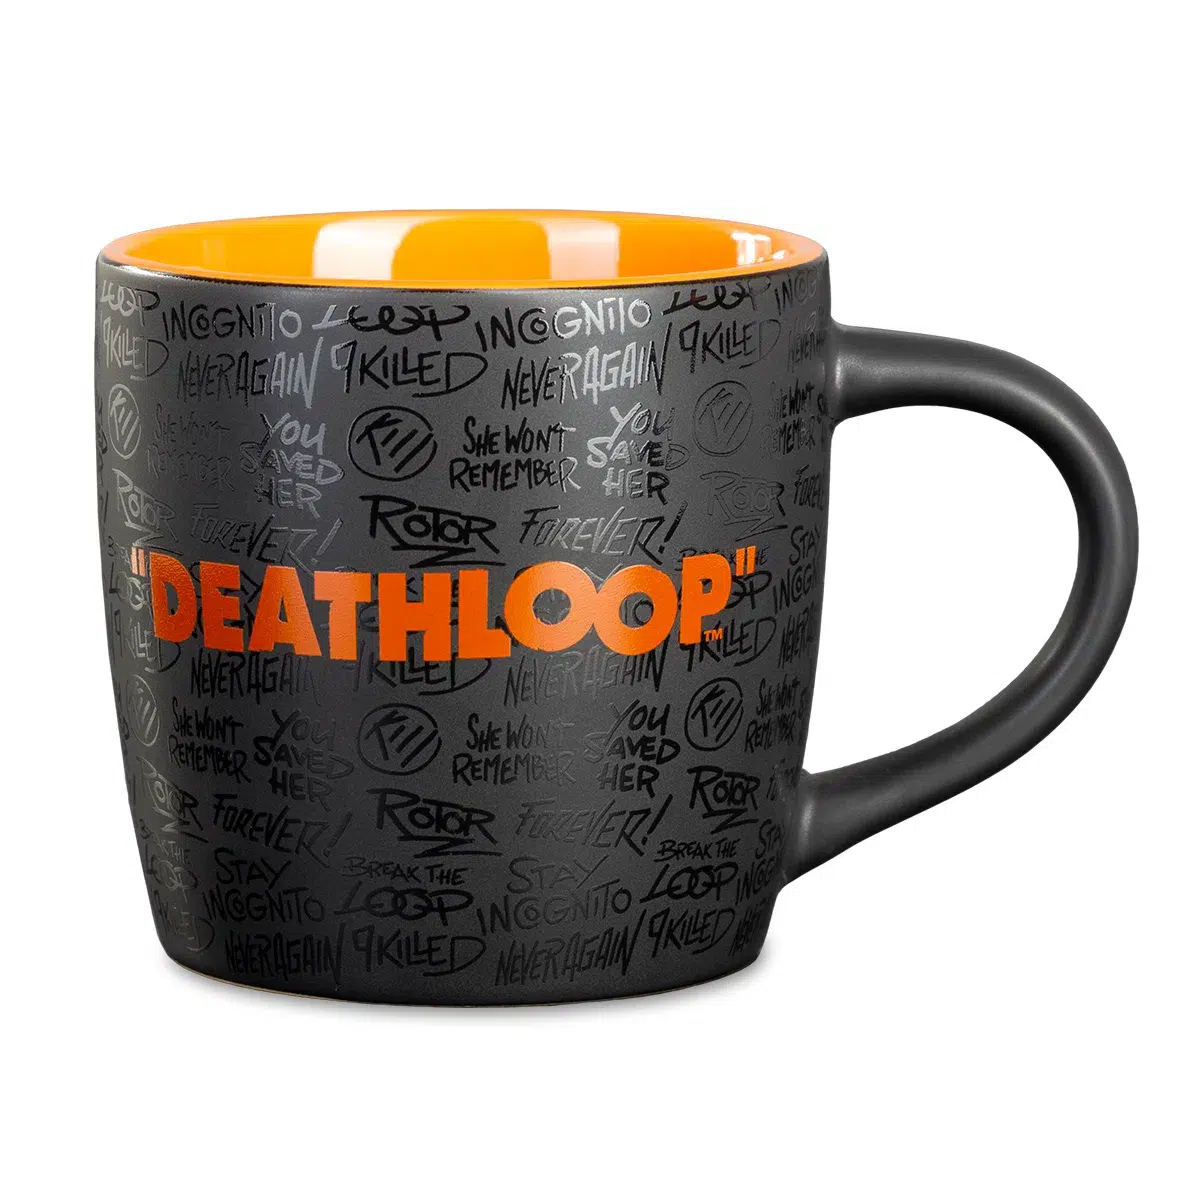 Deathloop Two-Colored Mug "Logo"